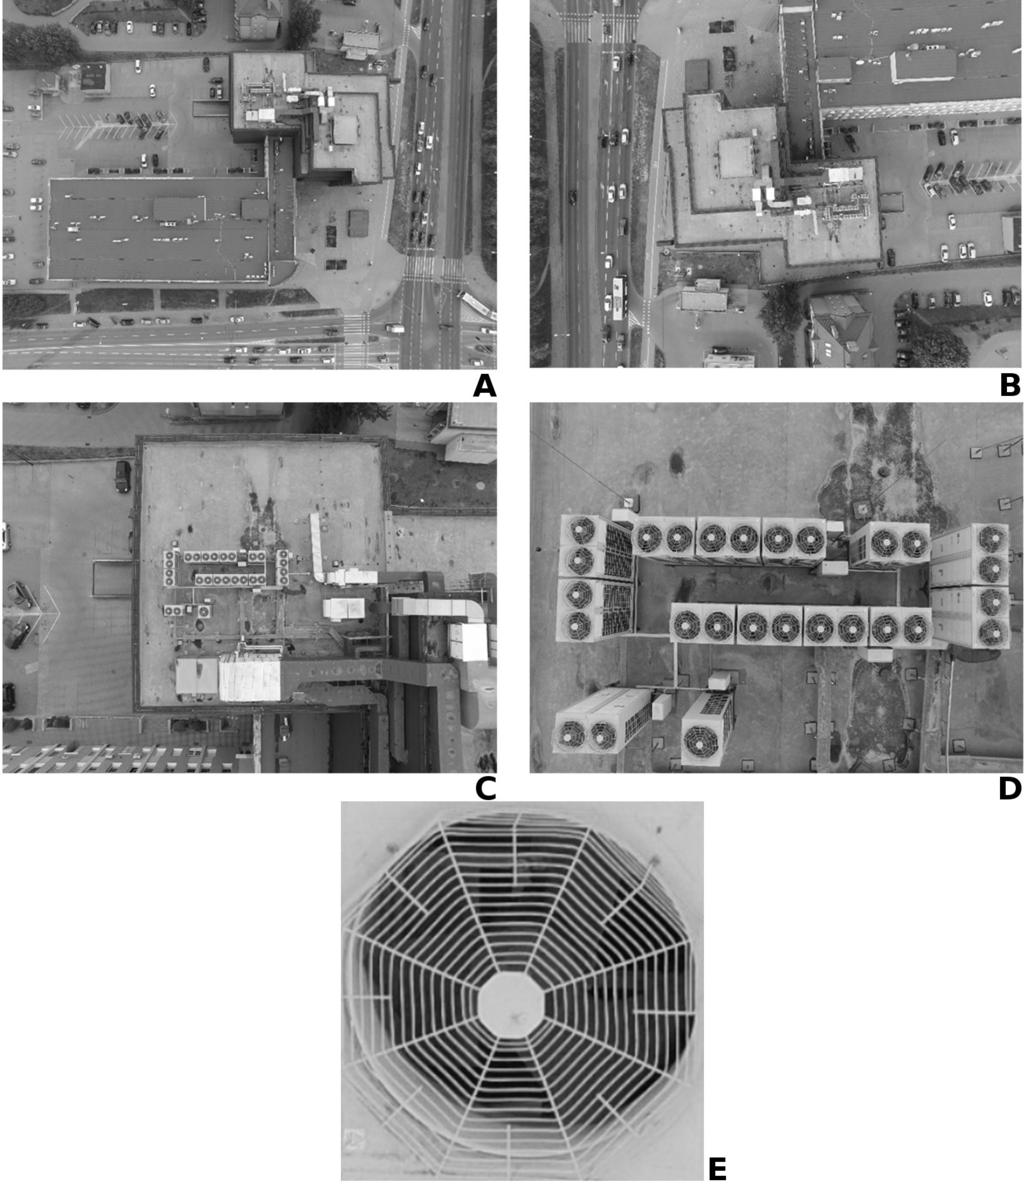 160 Metody ilościowe w ekonomii Fotografia 1. Wizualna ocena stanu technicznego pokrycia dachu za pomocą zdjęć lotniczych (BSP).